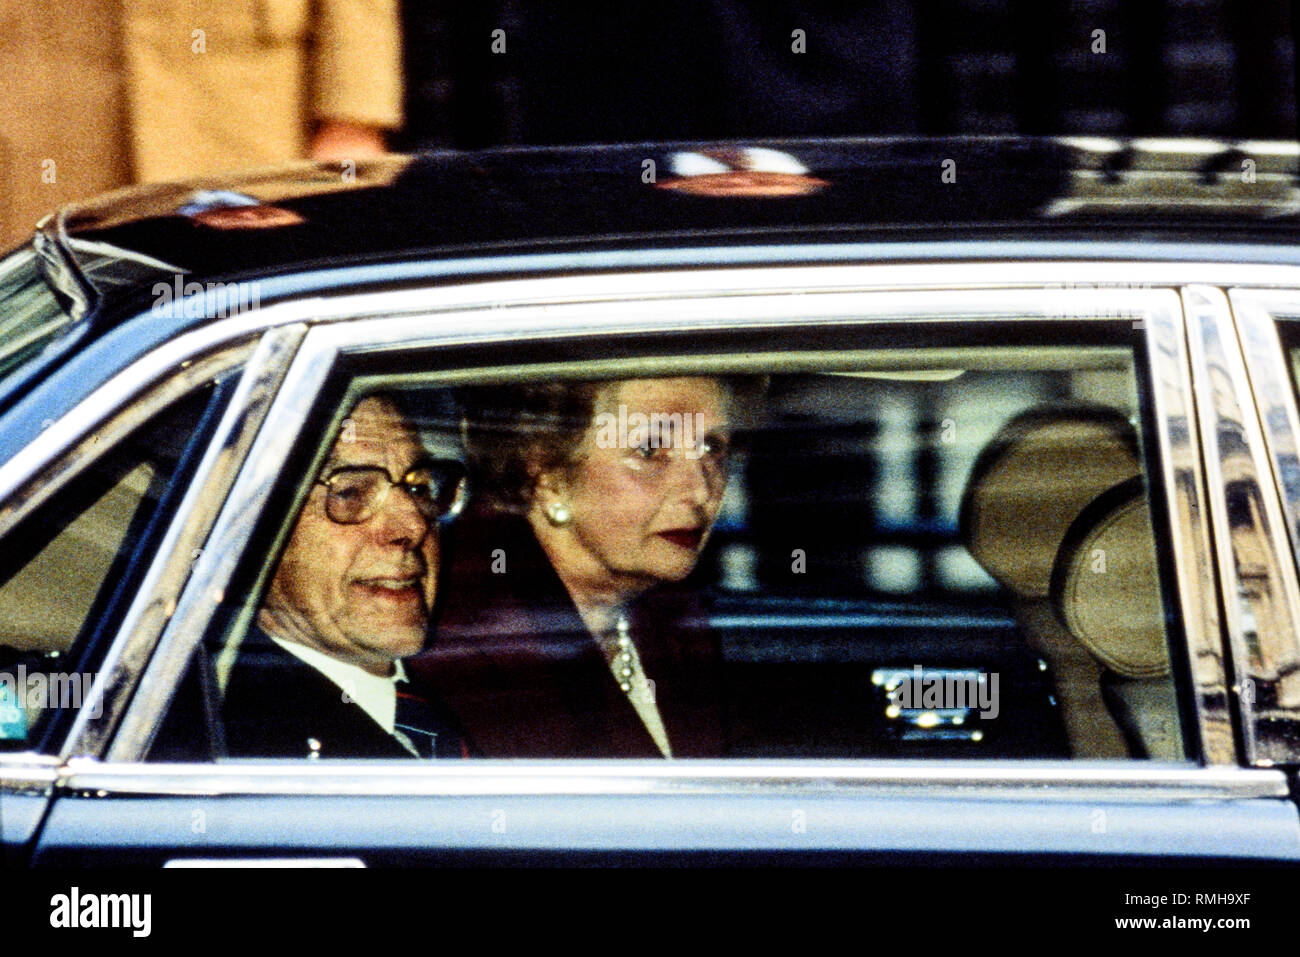 28-11 der 90er. London, Großbritannien. Margaret Thatcher Blätter Downing Street zum letzten Mal. Foto: © Simon Grosset. Archiv: Bild von einem ursprünglichen t digitalisiert Stockfoto